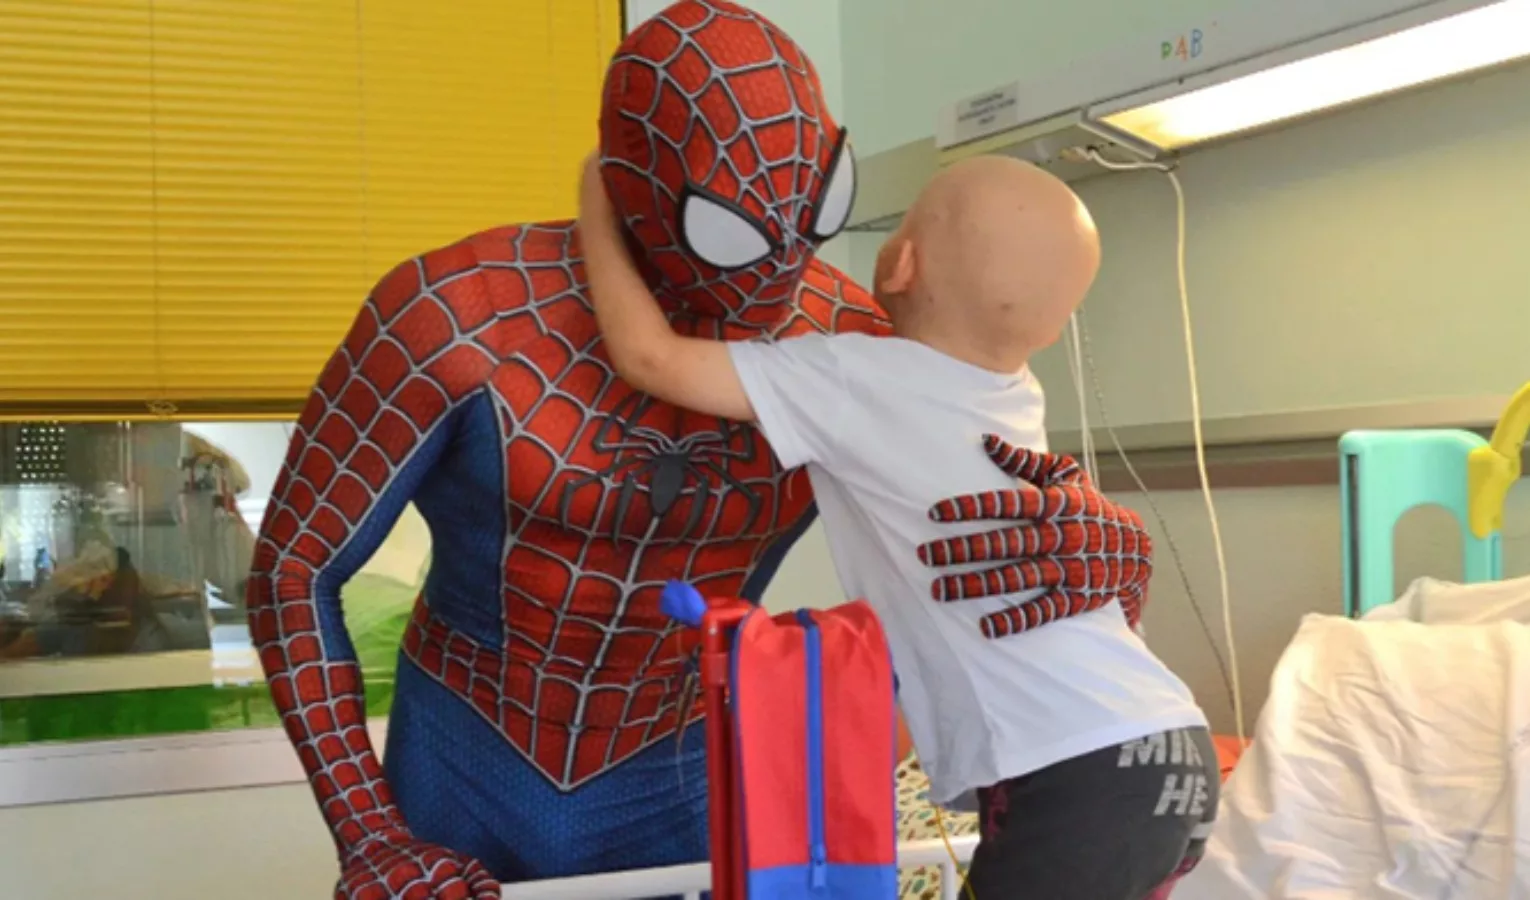 La storia di Mattia: Come Spiderman incontro i bimbi malati e mi arrampico  sui loro cuori -  - Le notizie aggiornate dalla Liguria